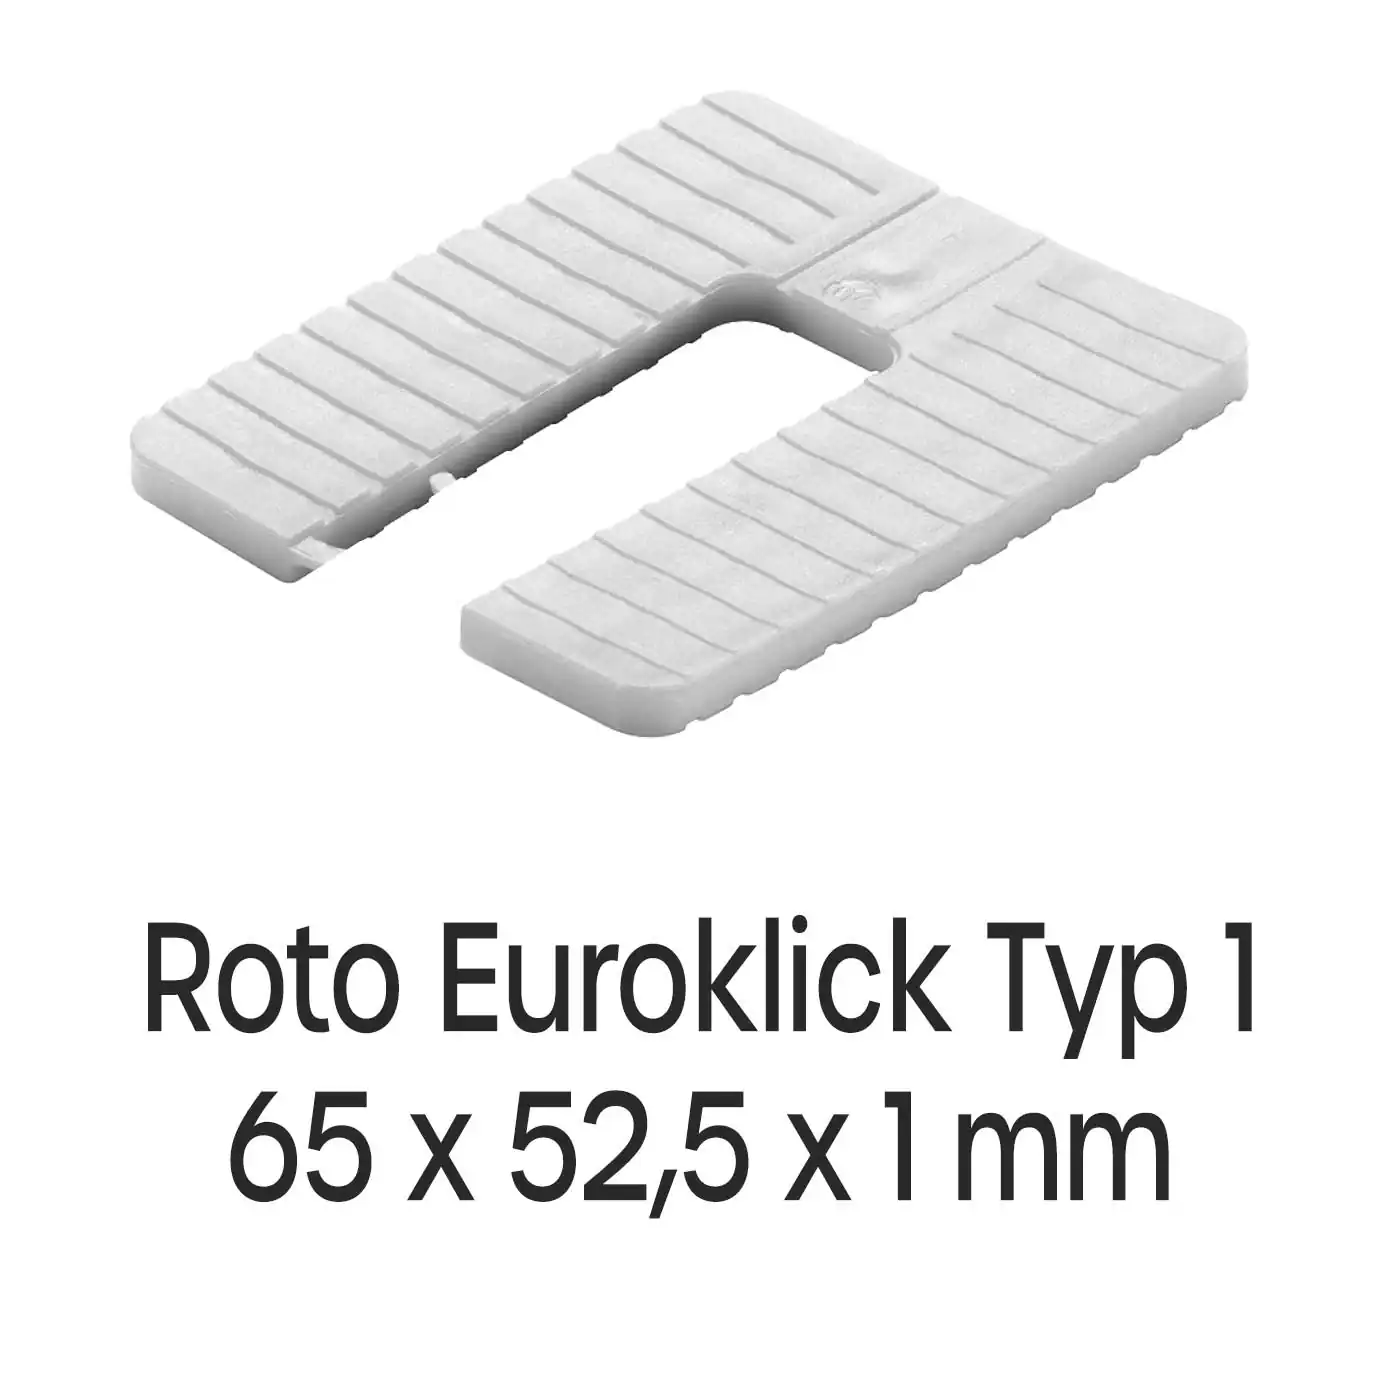 Distanzplatten Roto Euroklick Typ 1 65 x 52,5 x 1 mm 1000 Stück